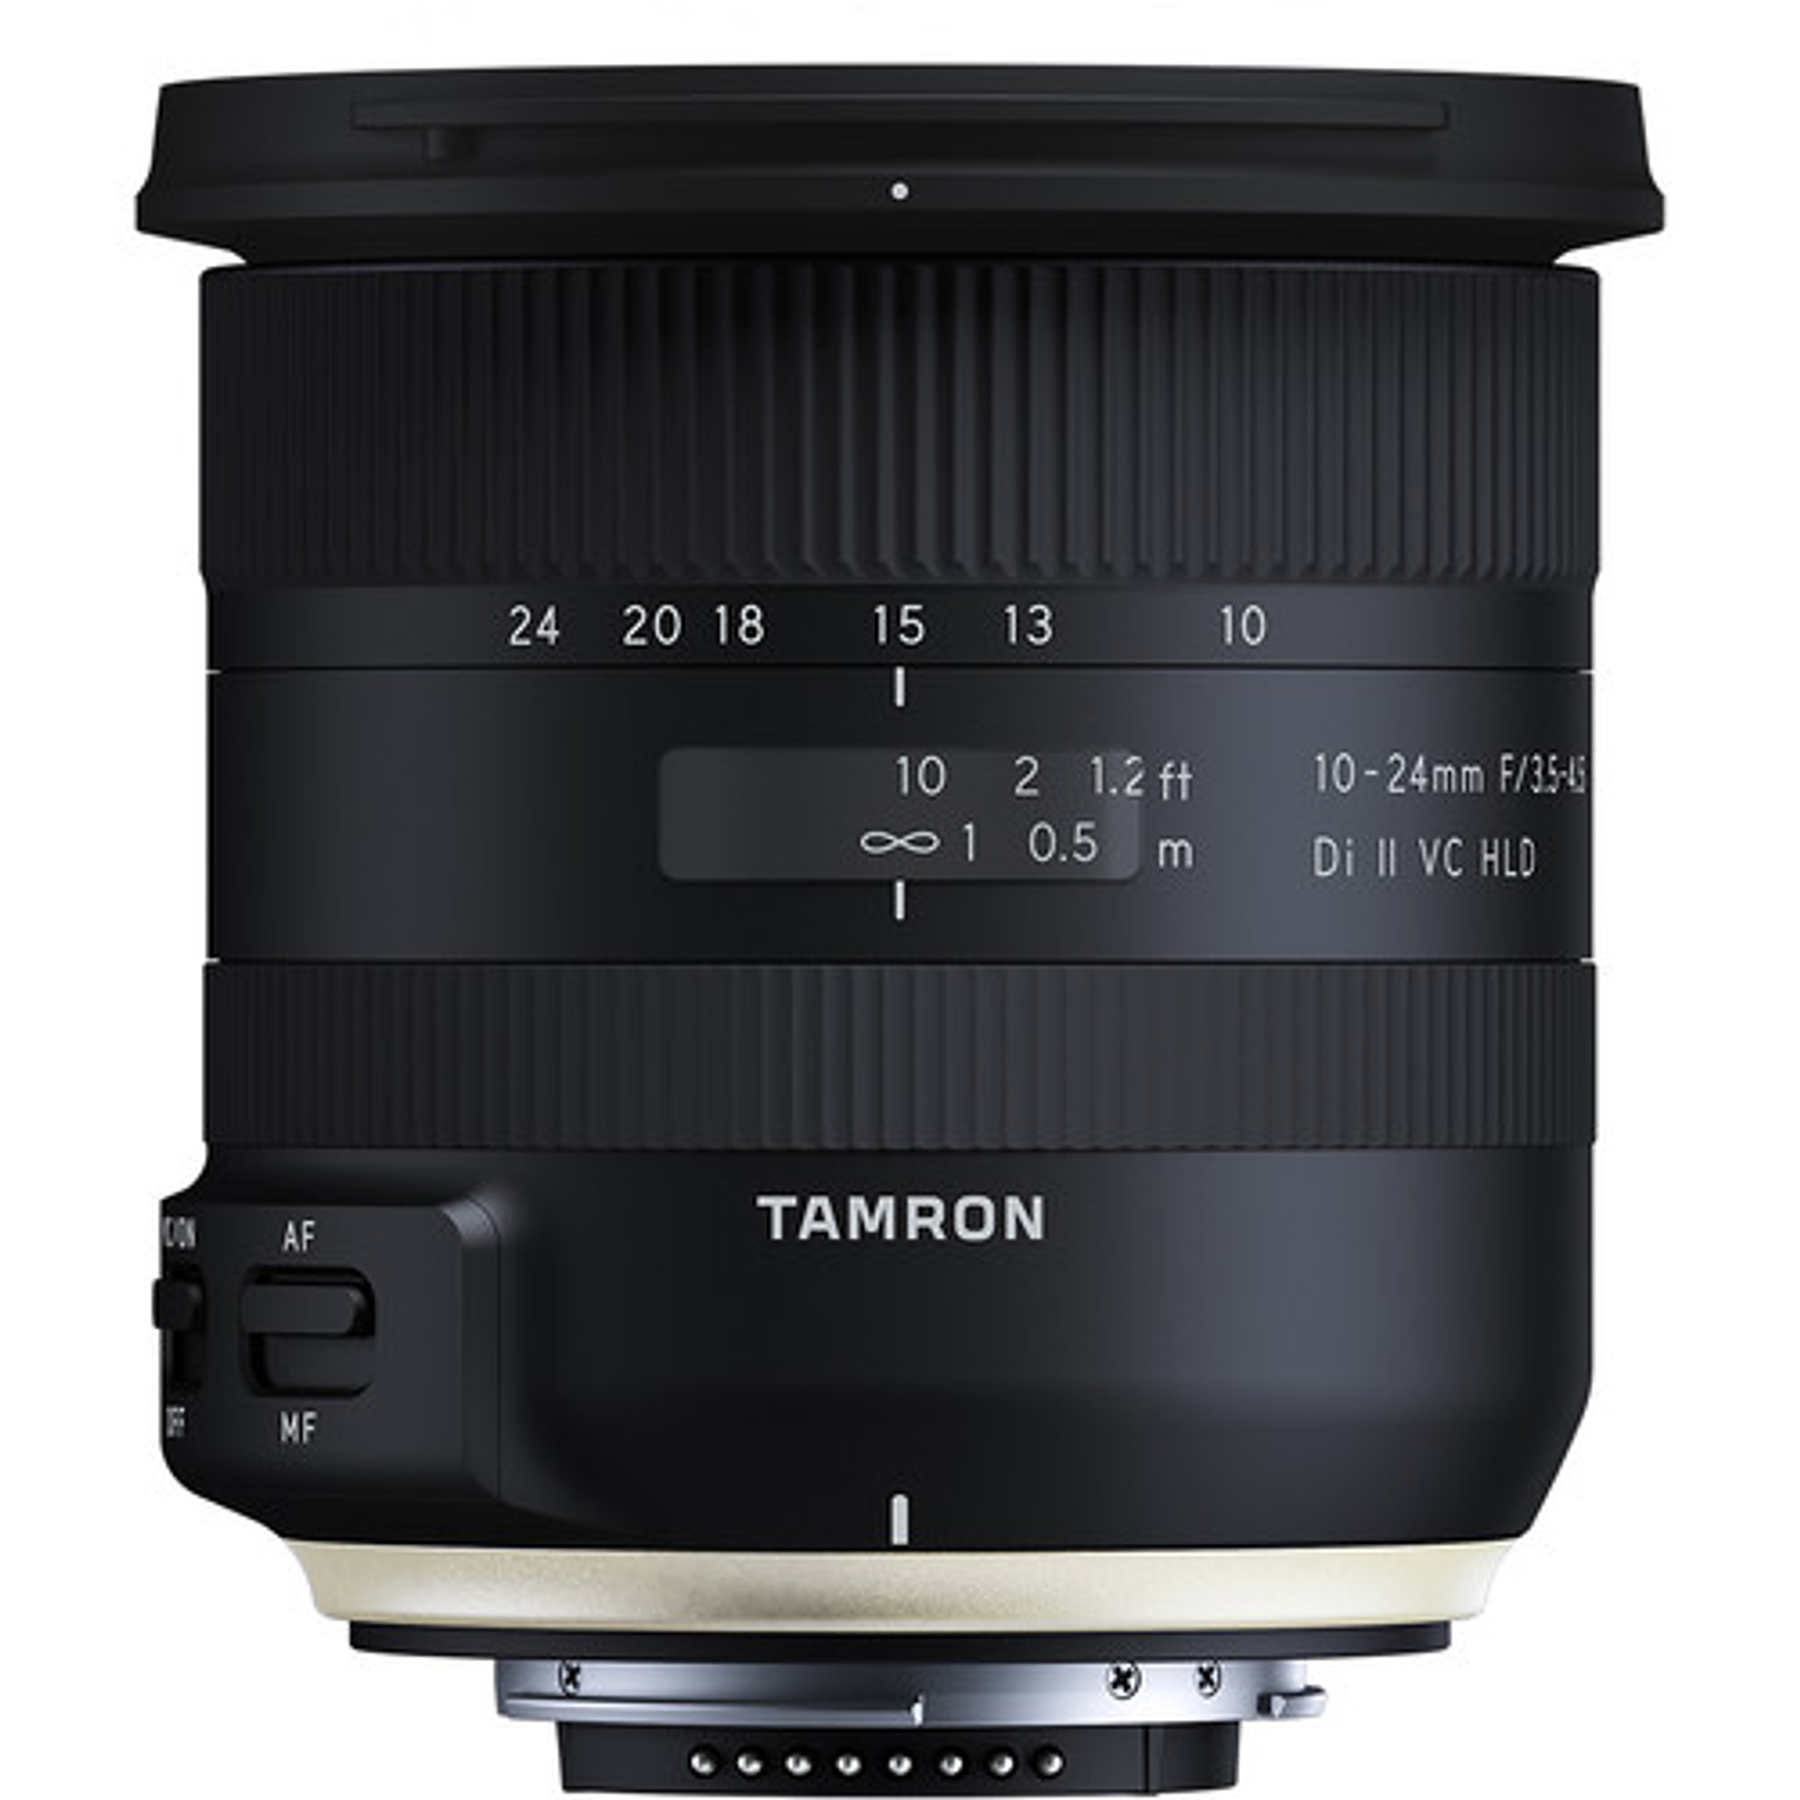 Tamron Lente 10-24mm F/3.5-4.5 Di II VC HLD para Canon/Nikon